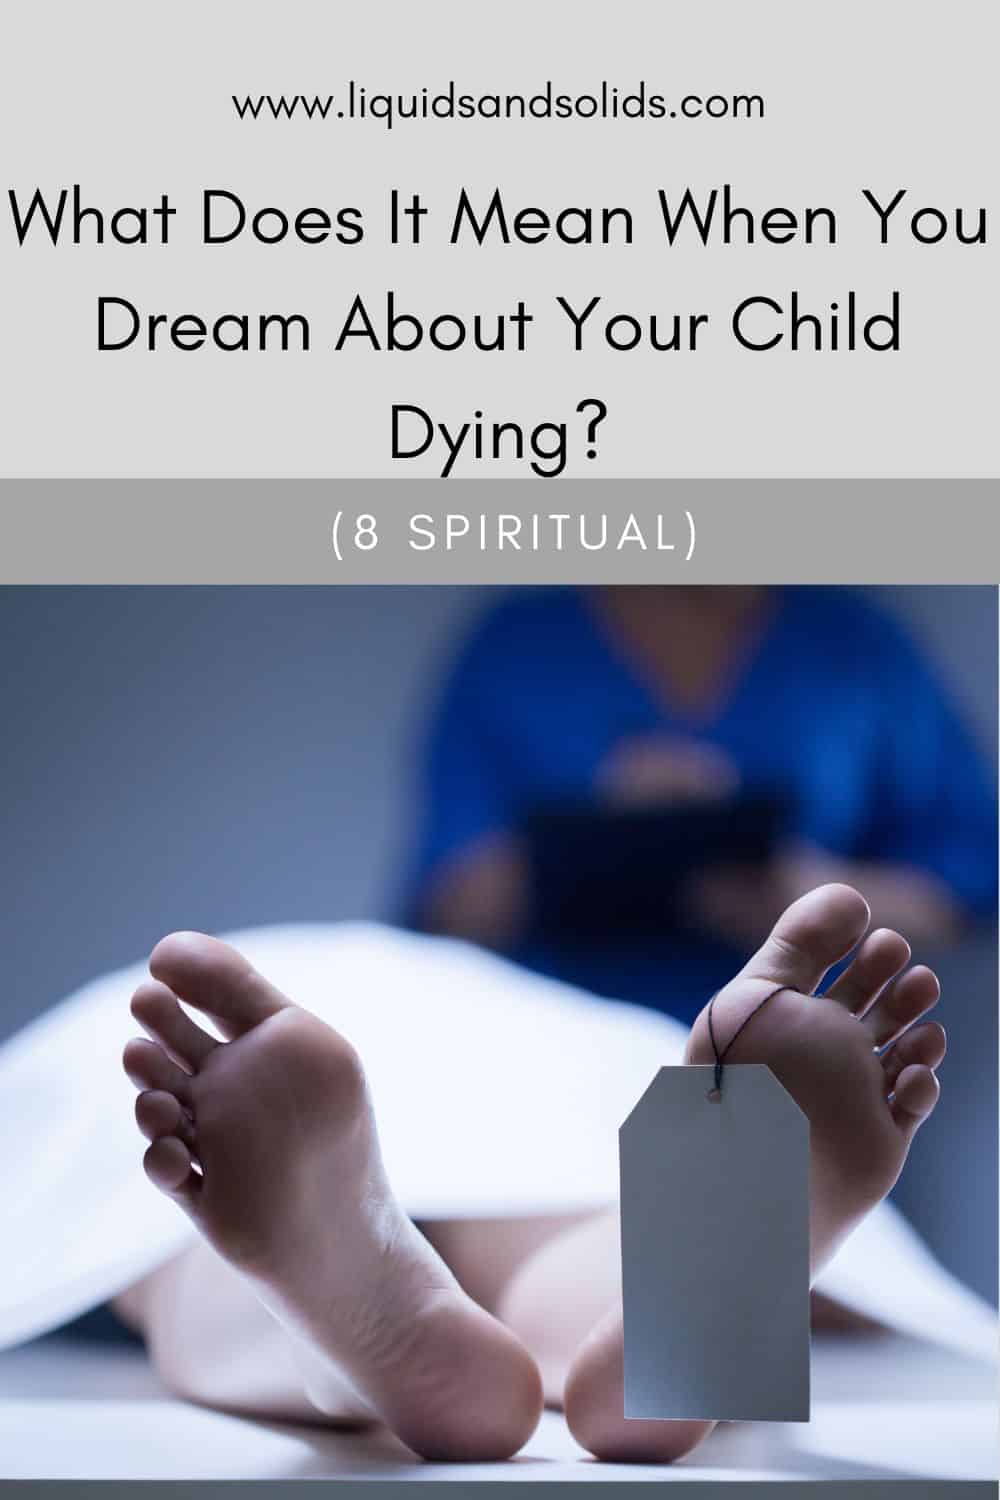  ماذا يعني عندما تحلم بوفاة طفلك؟ (8 معاني روحية)